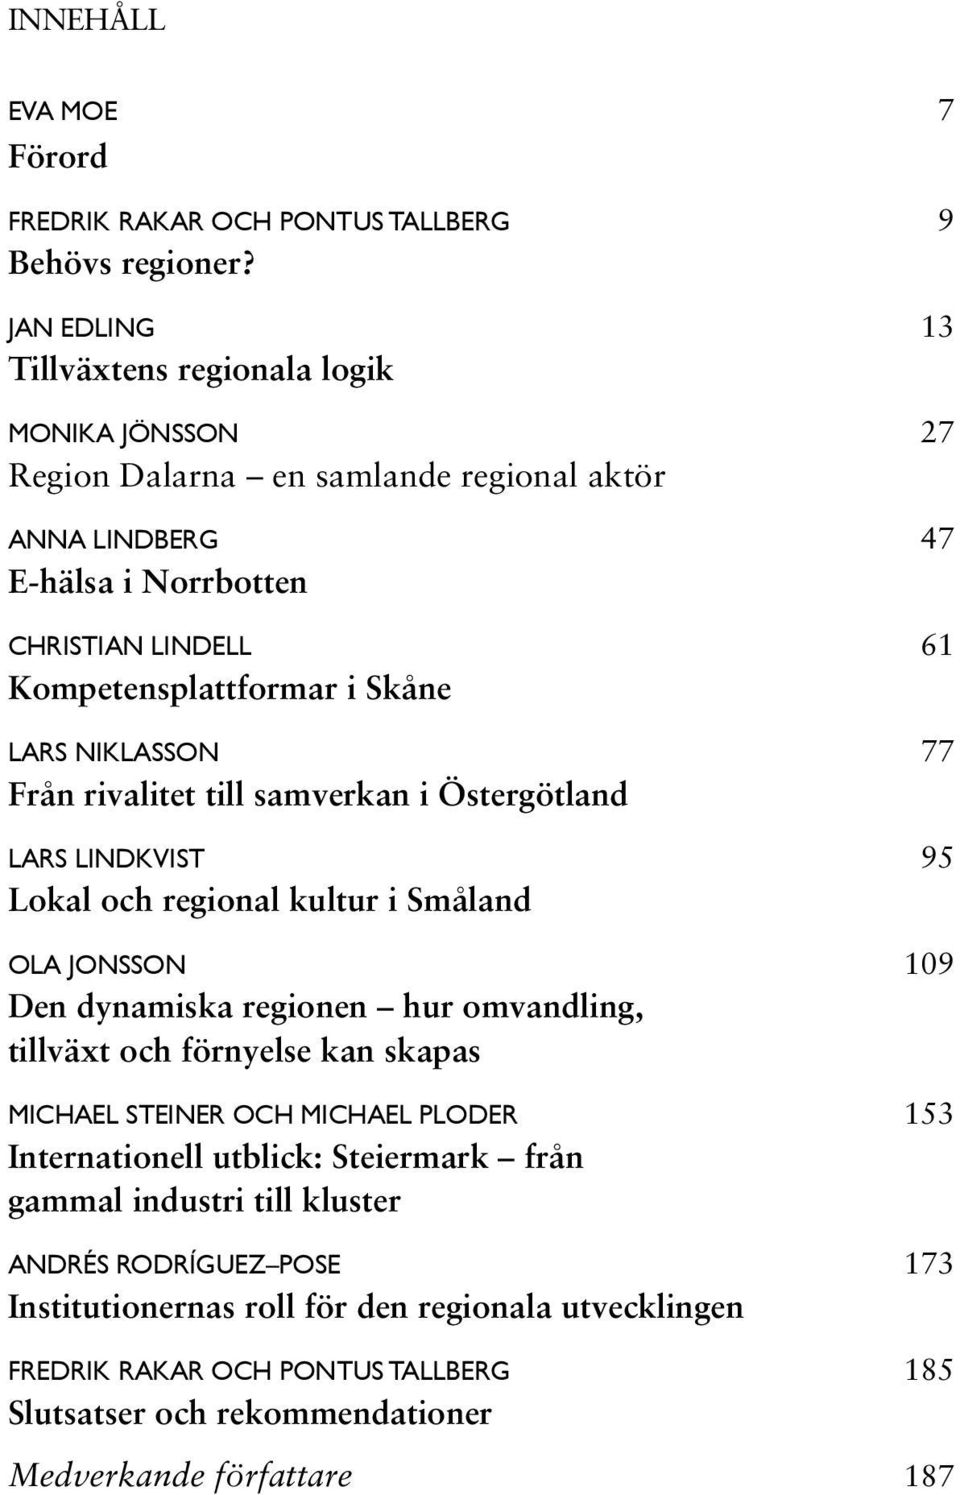 LARS NIKLASSON 77 Från rivalitet till samverkan i Östergötland LaRs lindkvist 95 Lokal och regional kultur i Småland ola jonsson 109 Den dynamiska regionen hur omvandling, tillväxt och